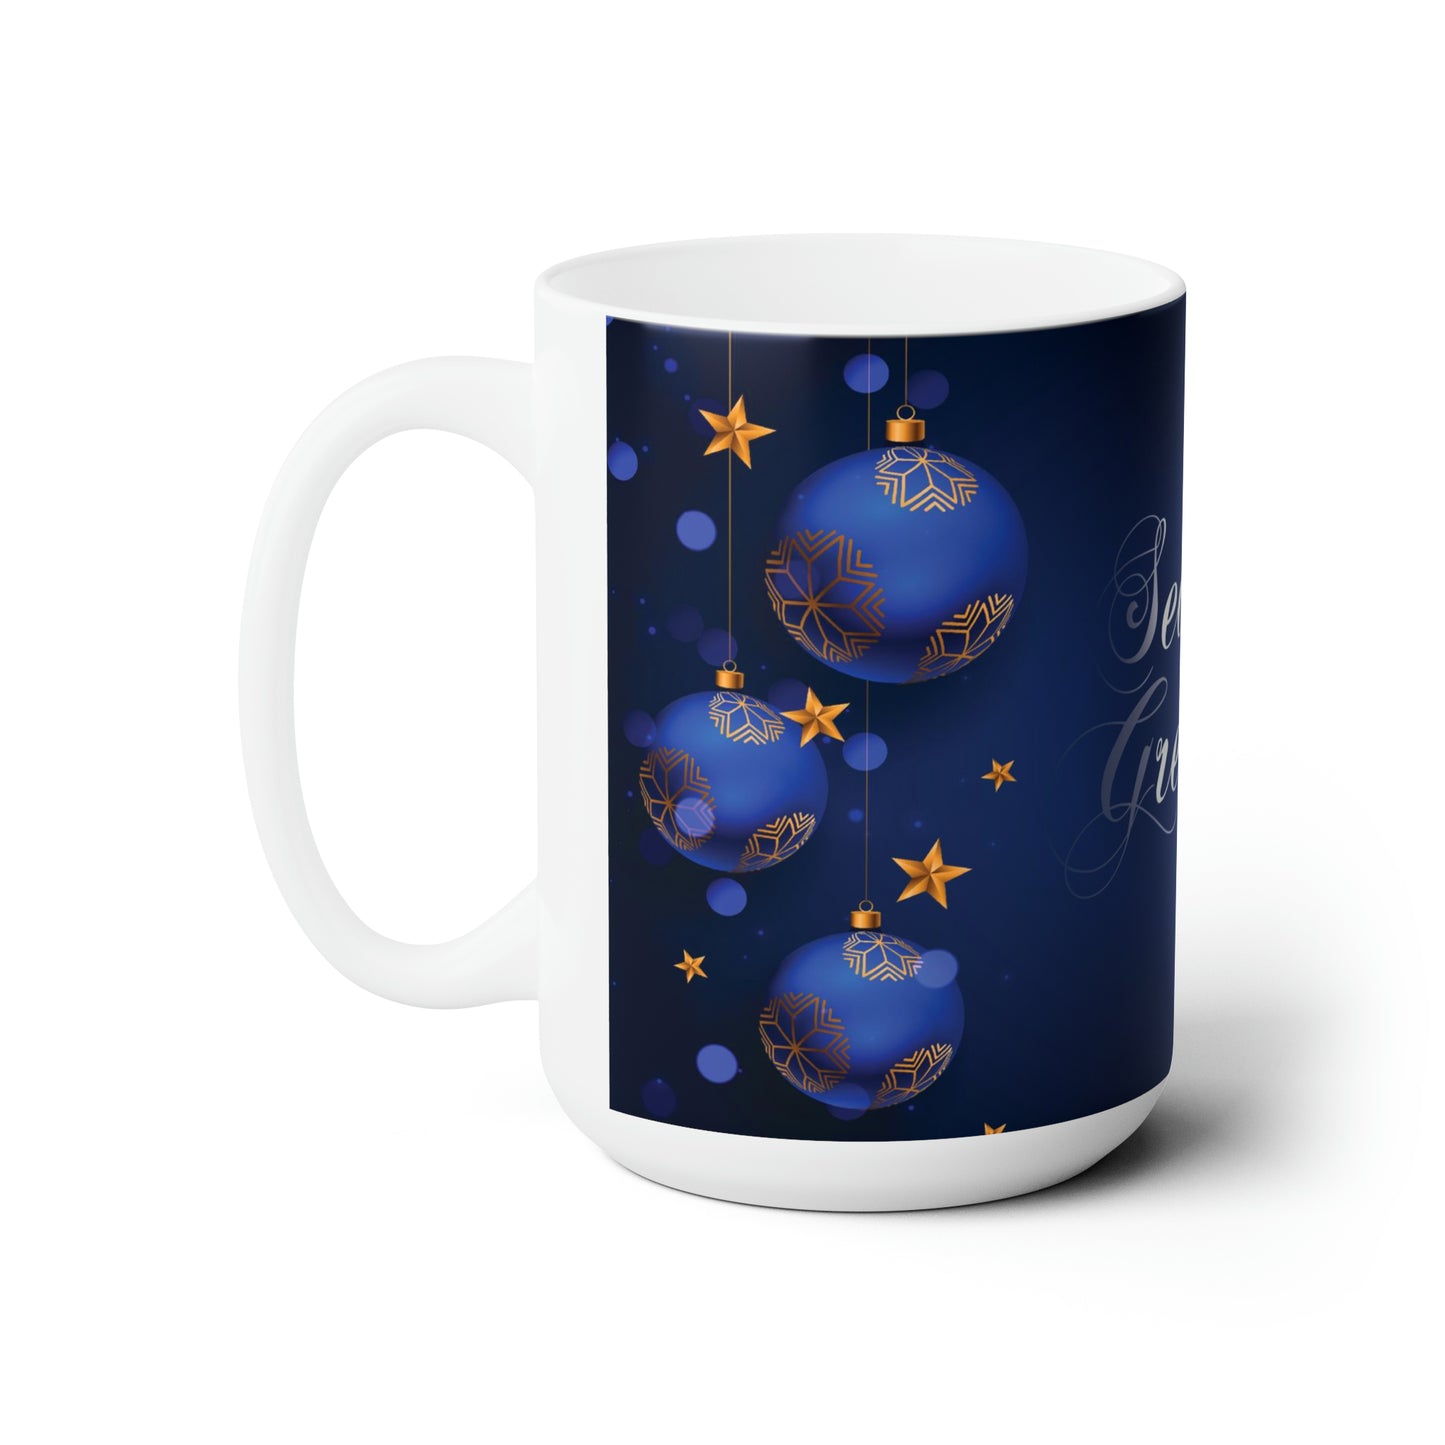 Merry Christmas Ceramic Mug 15oz, Blue